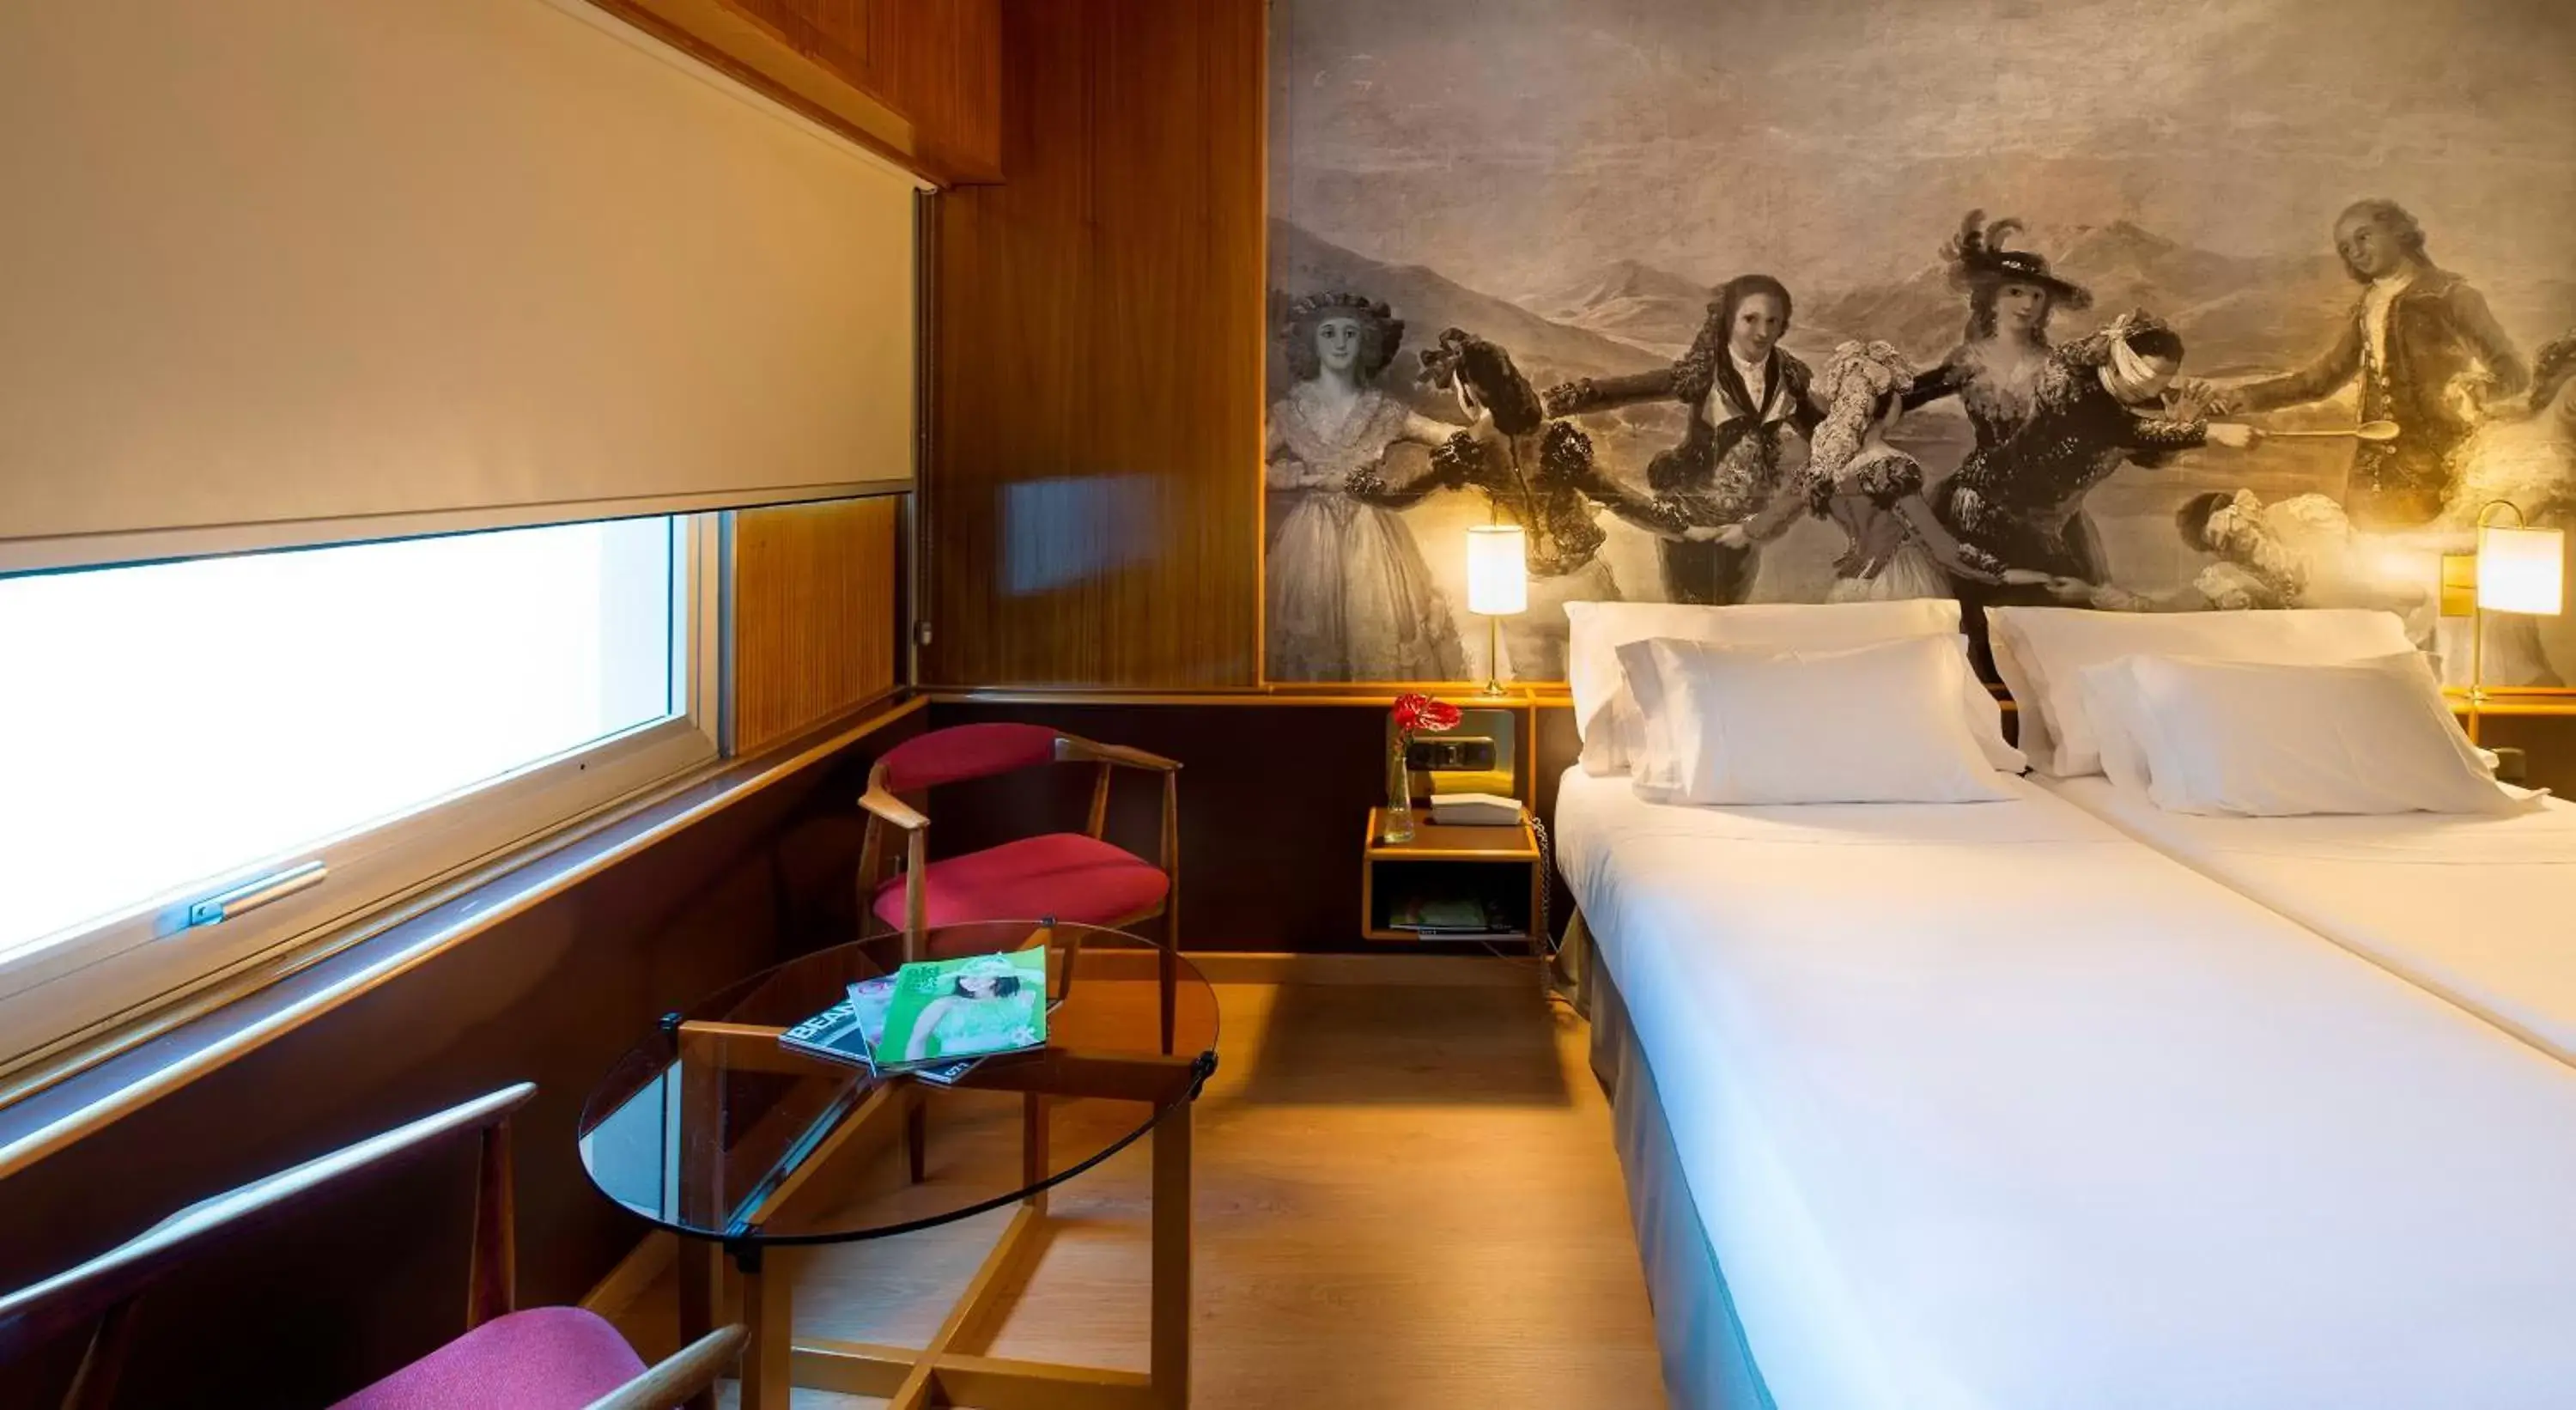 Bed, Room Photo in Hotel Goya